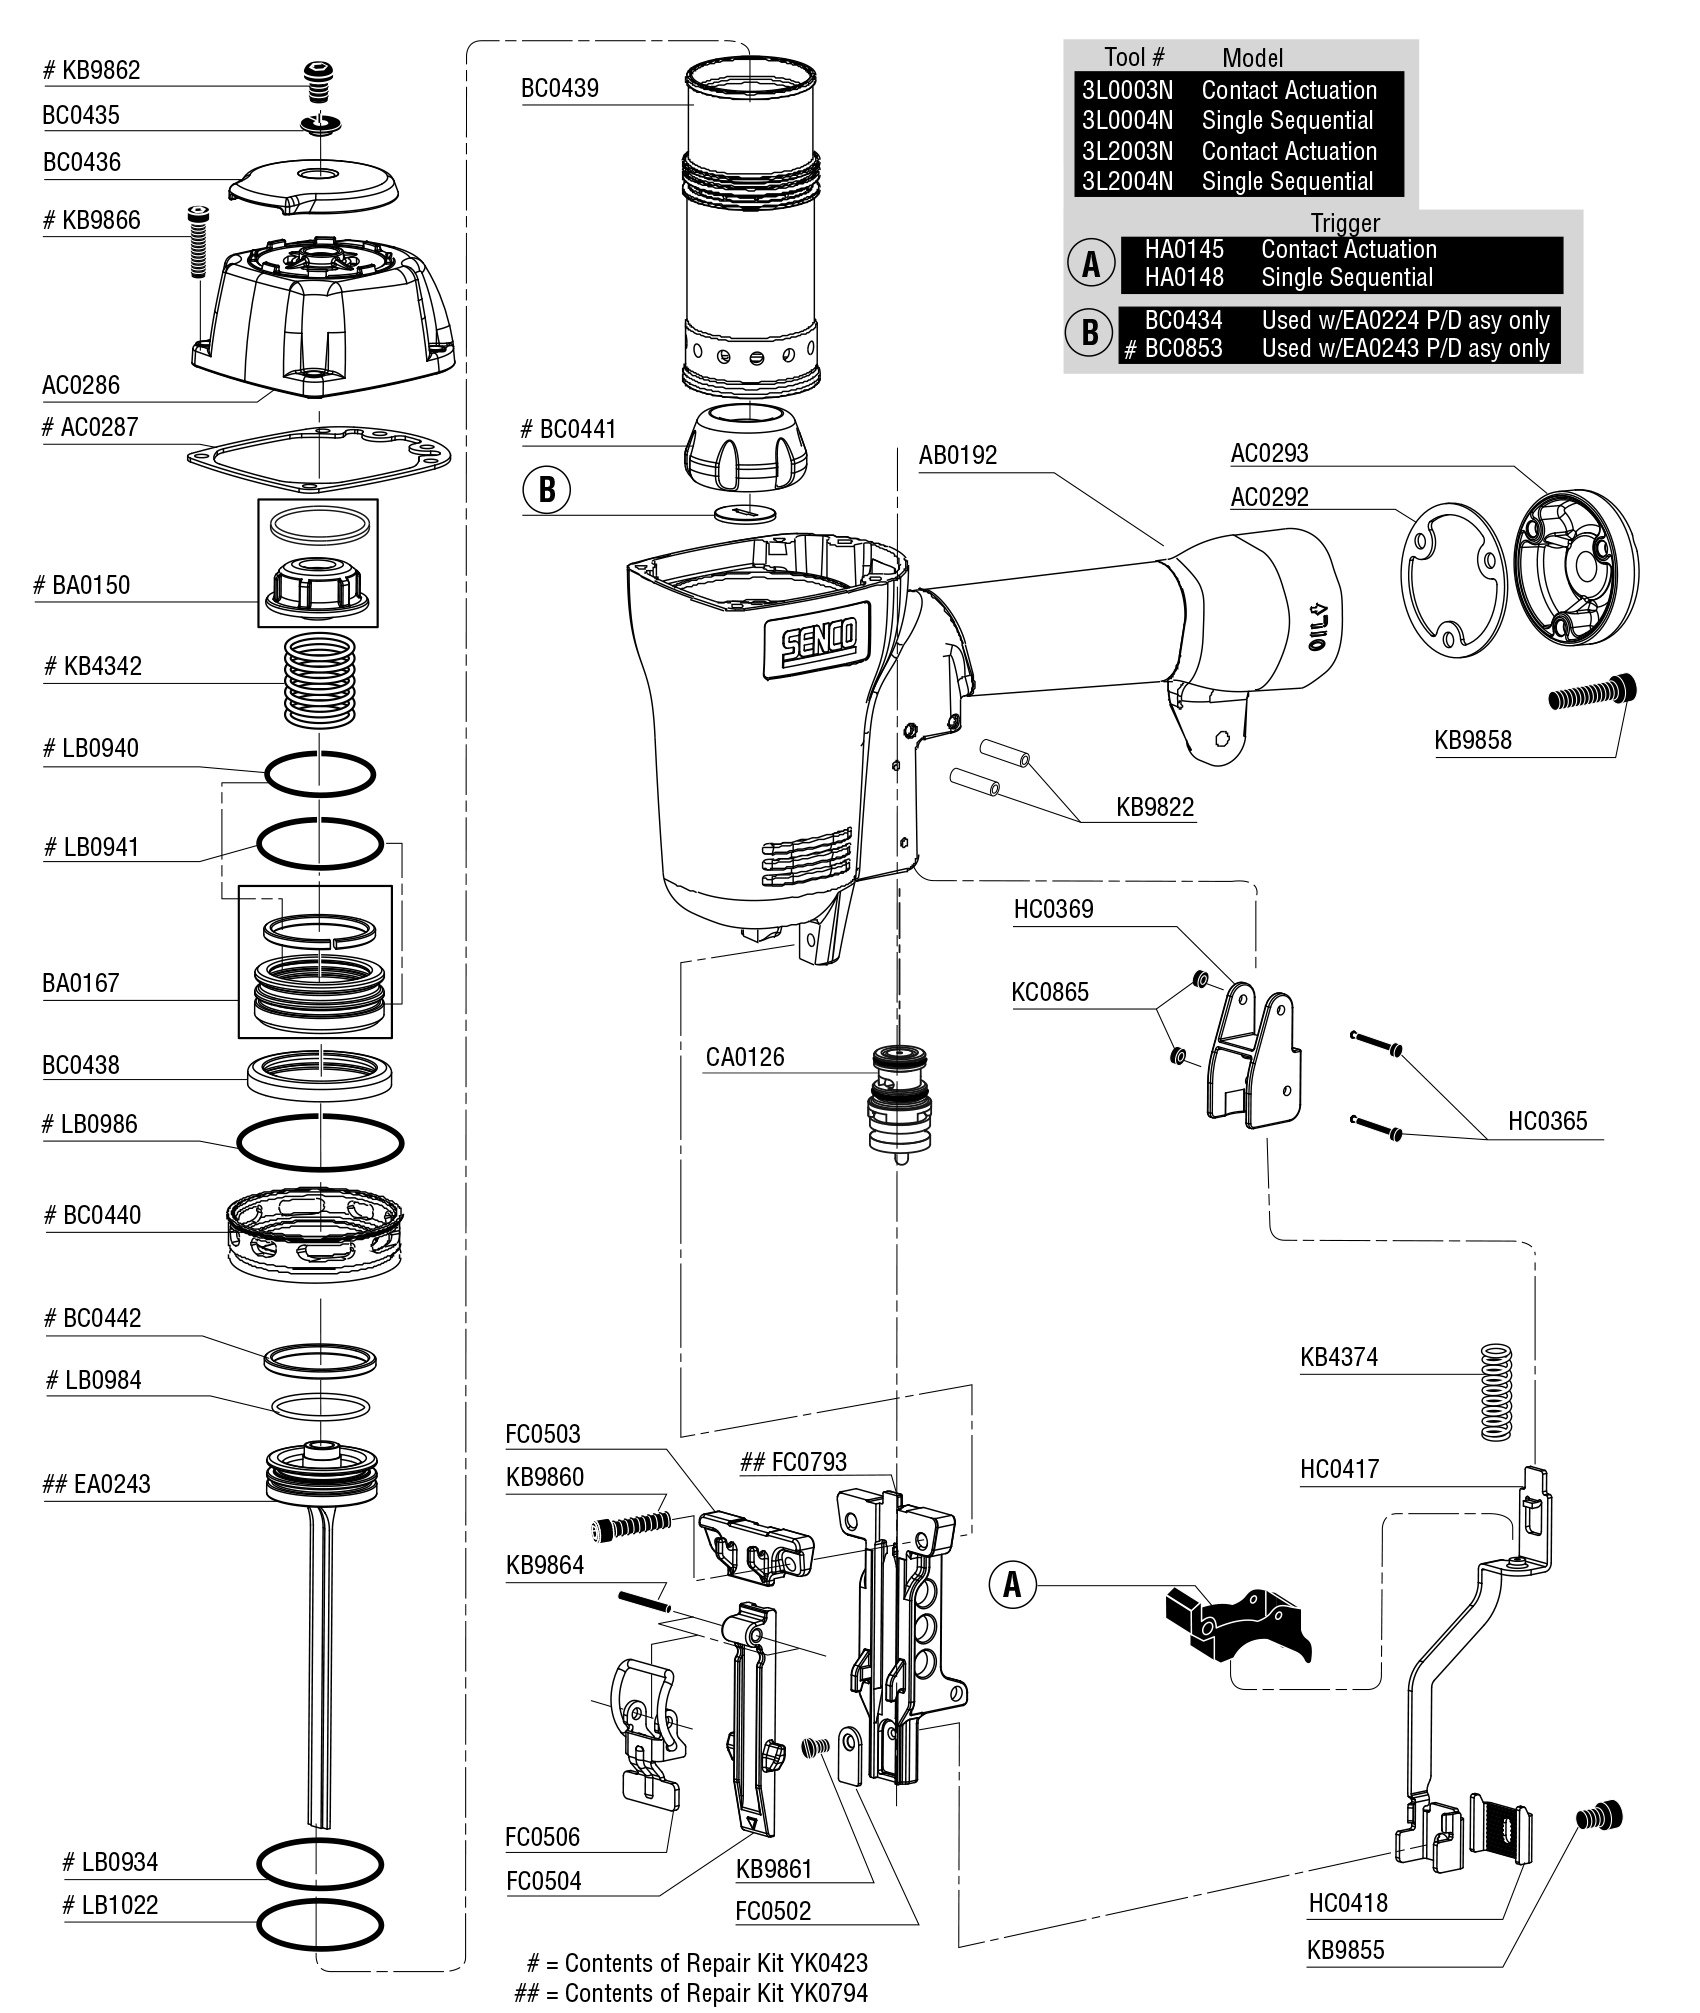 Anatomy of a Staple - SENCO